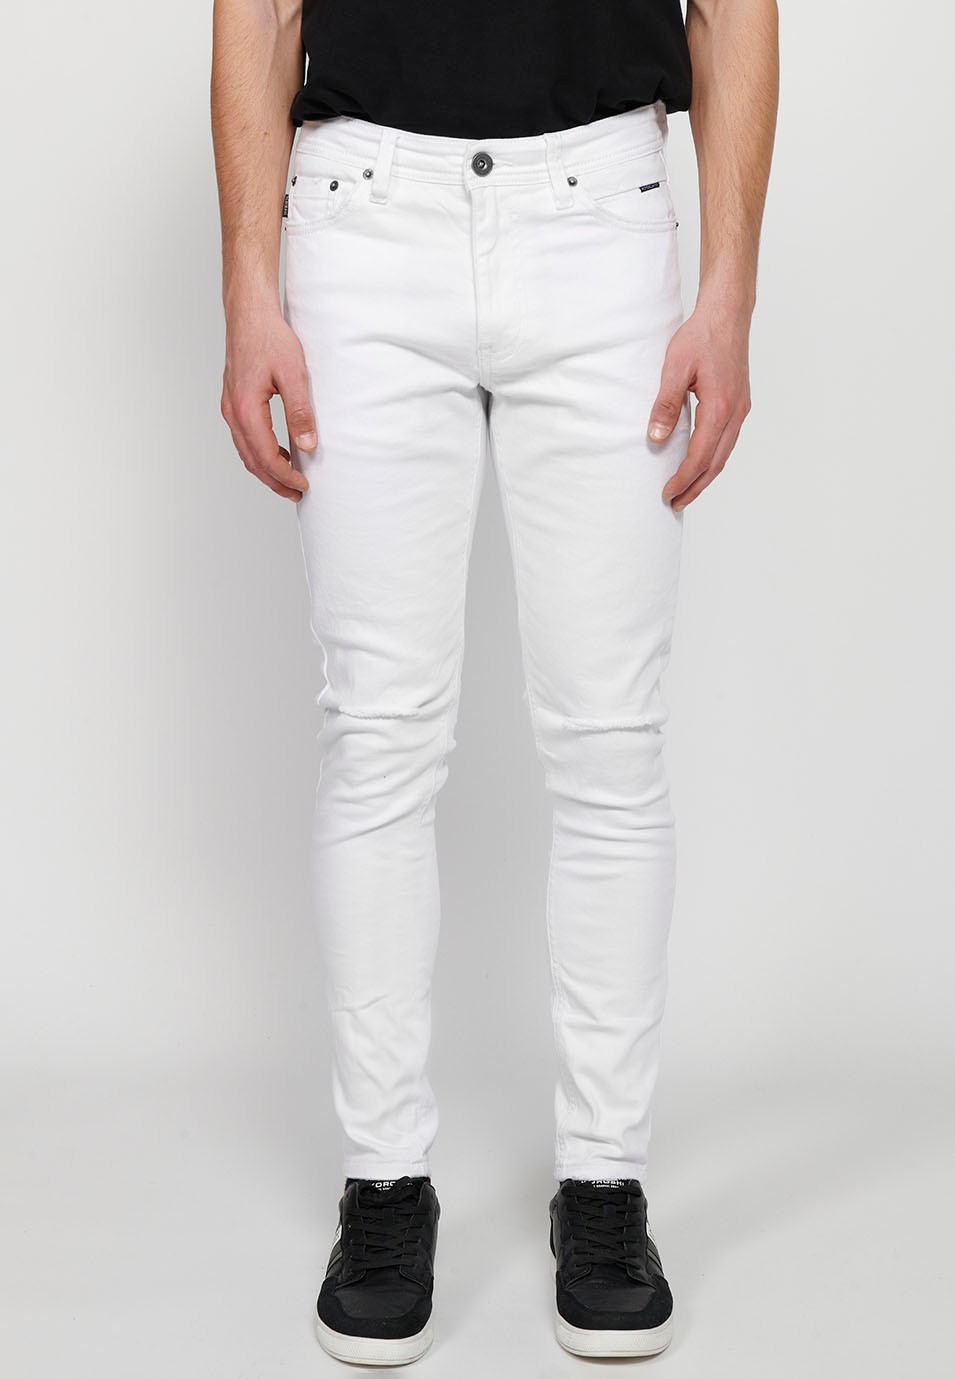 Pantalons jeans super skinny amb Tancament davanter amb cremallera i botó de Color Denim Blanc per a Home 6